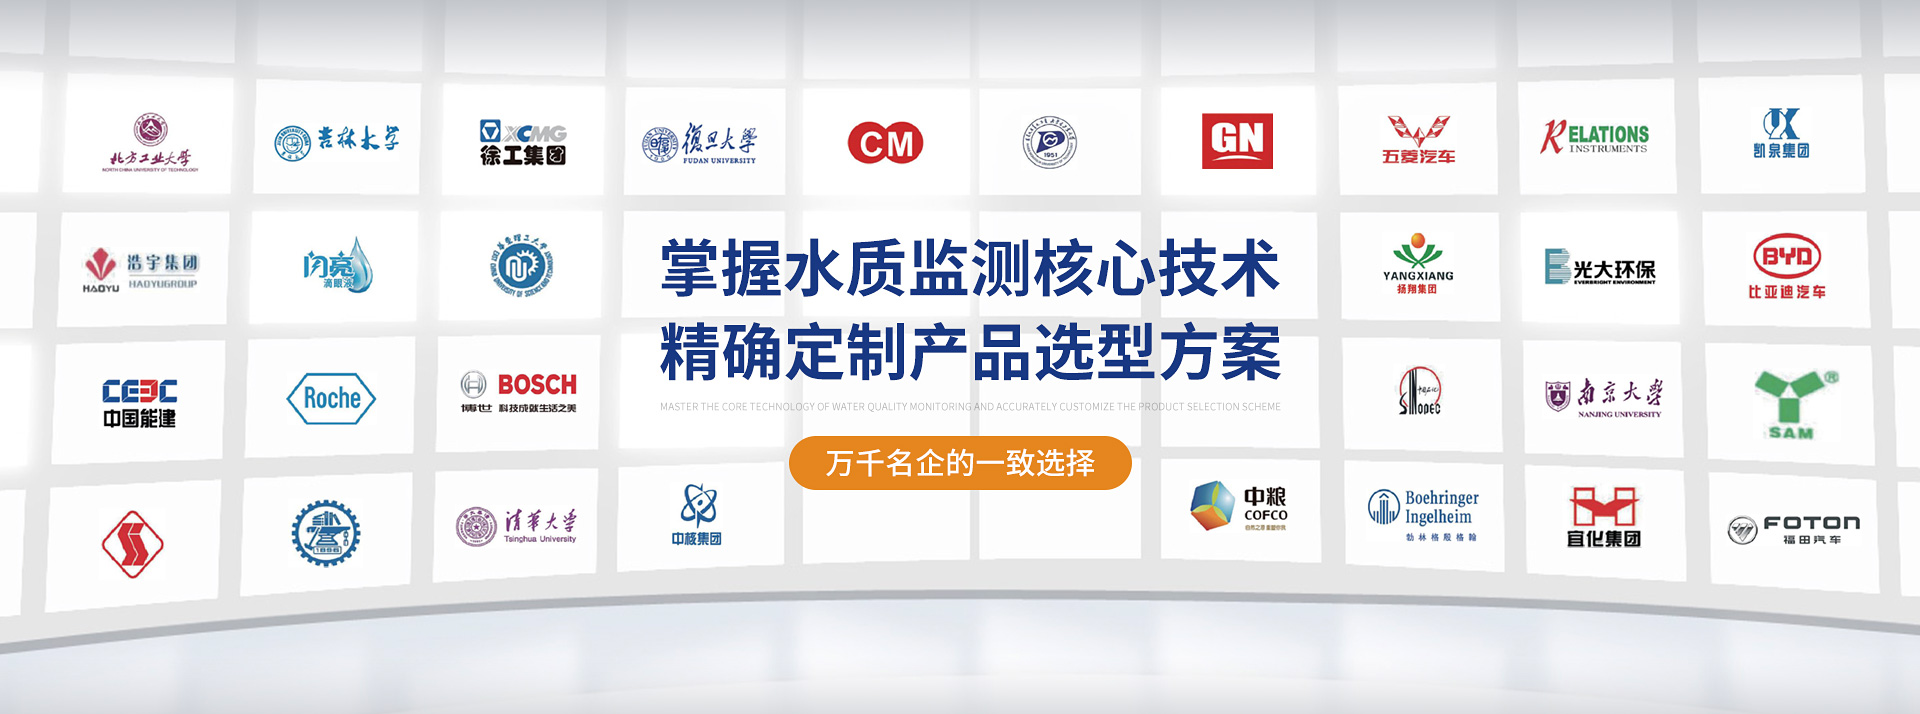 澳门沙金网址与上海交通大学达成产研战略合作